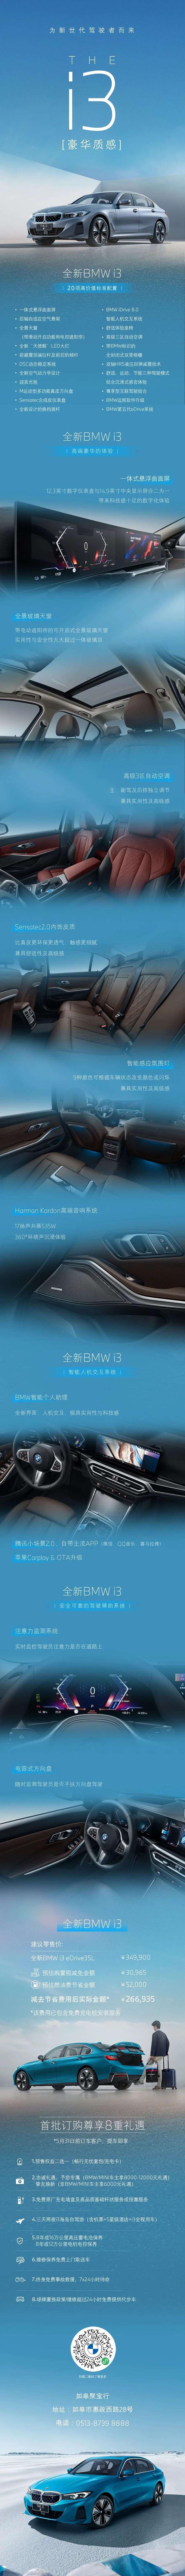 全新BMW i3热销预定中 | 为新世代驾驶者而来